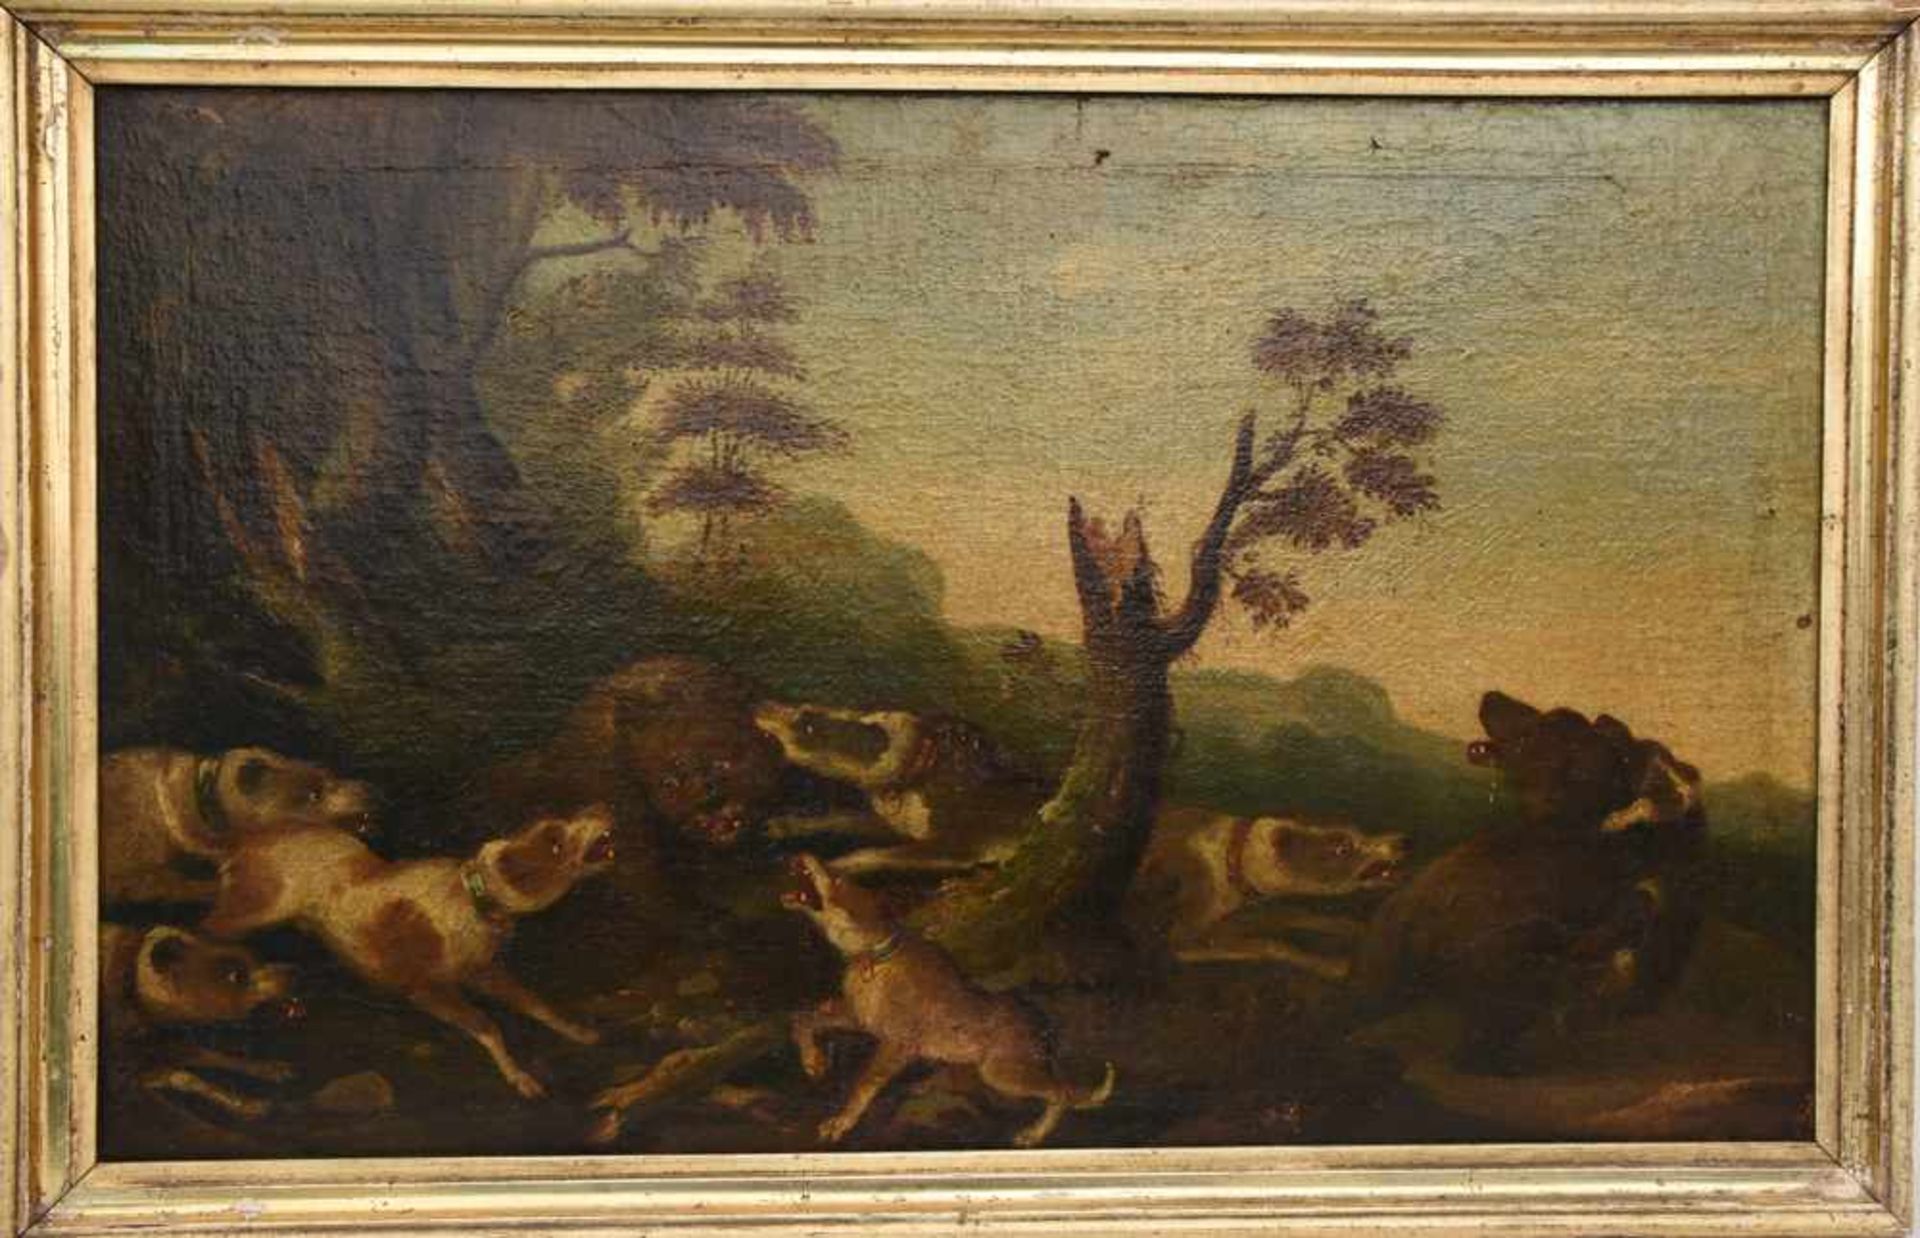 UNBEKANNTER KÜNSTLER, "Bären Treibjagd", Öl auf Leinwand, 19. JahrhundertSzenerie einer Treibjagd